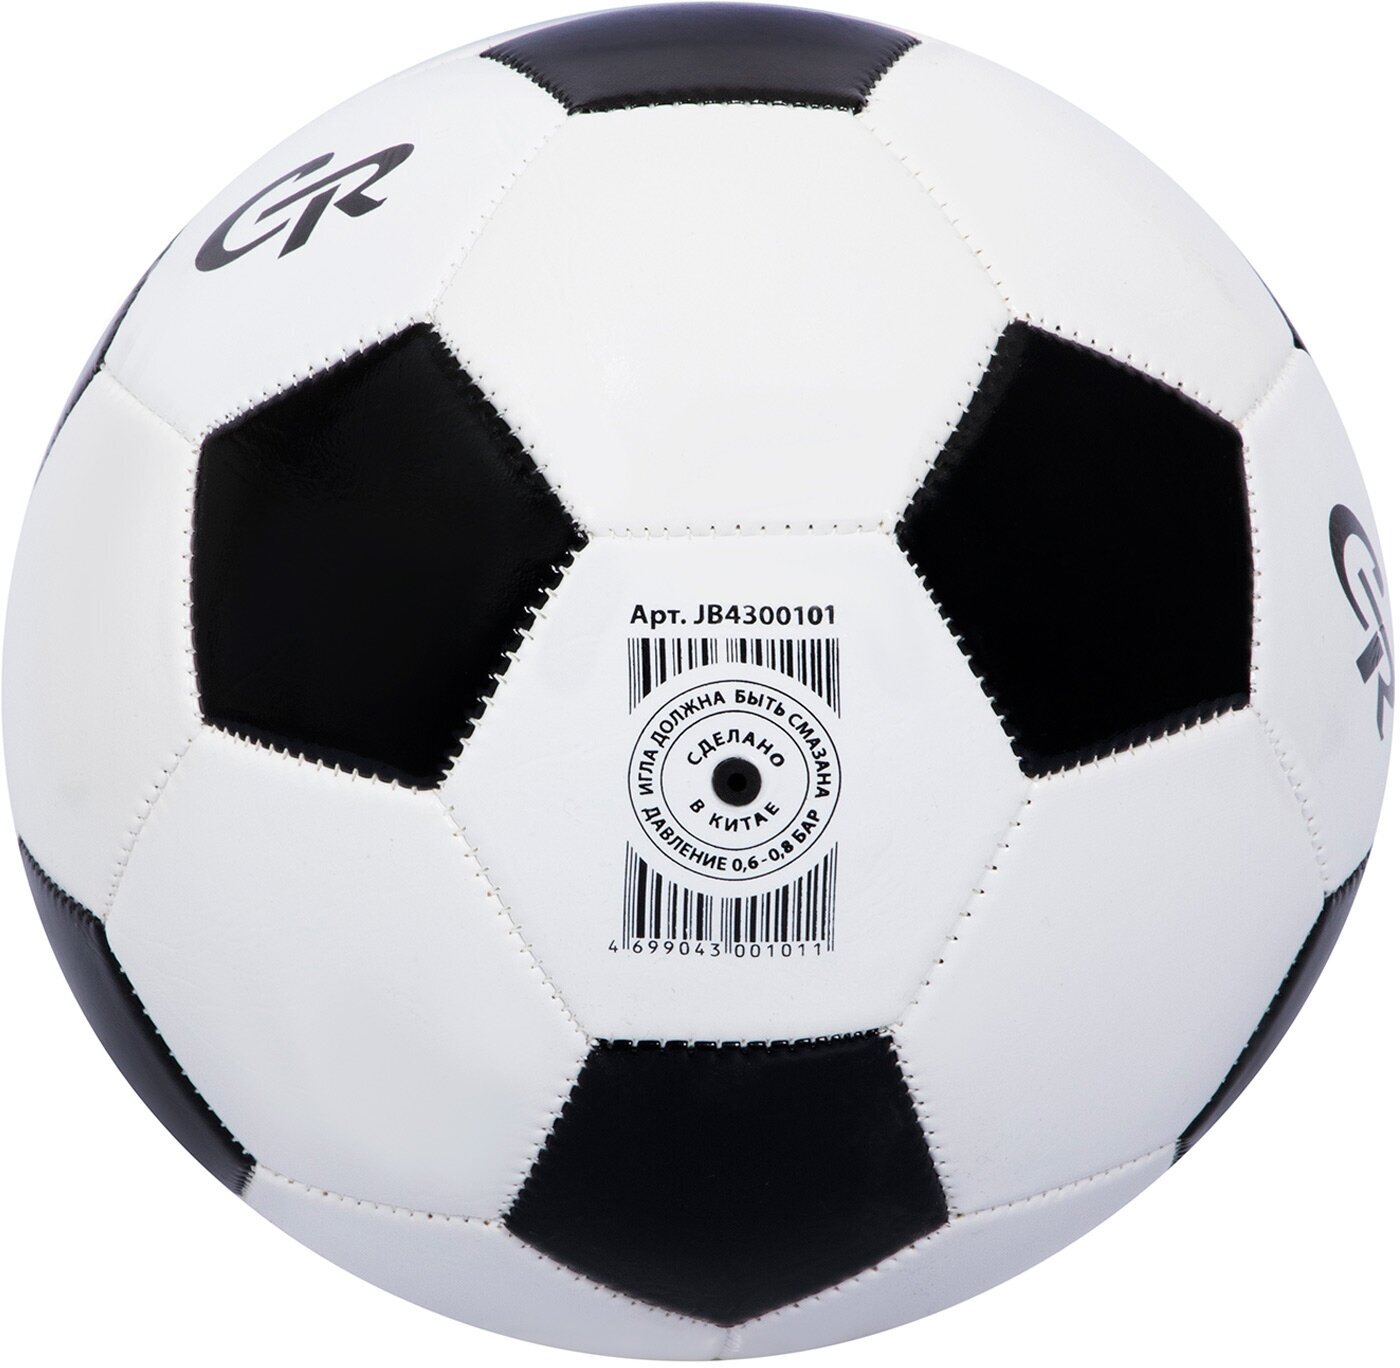 Мяч футбольный ТМ CR, 2-слойный, сшитые панели, ПВХ, размер 5, диаметр 22, JB4300101/надутый